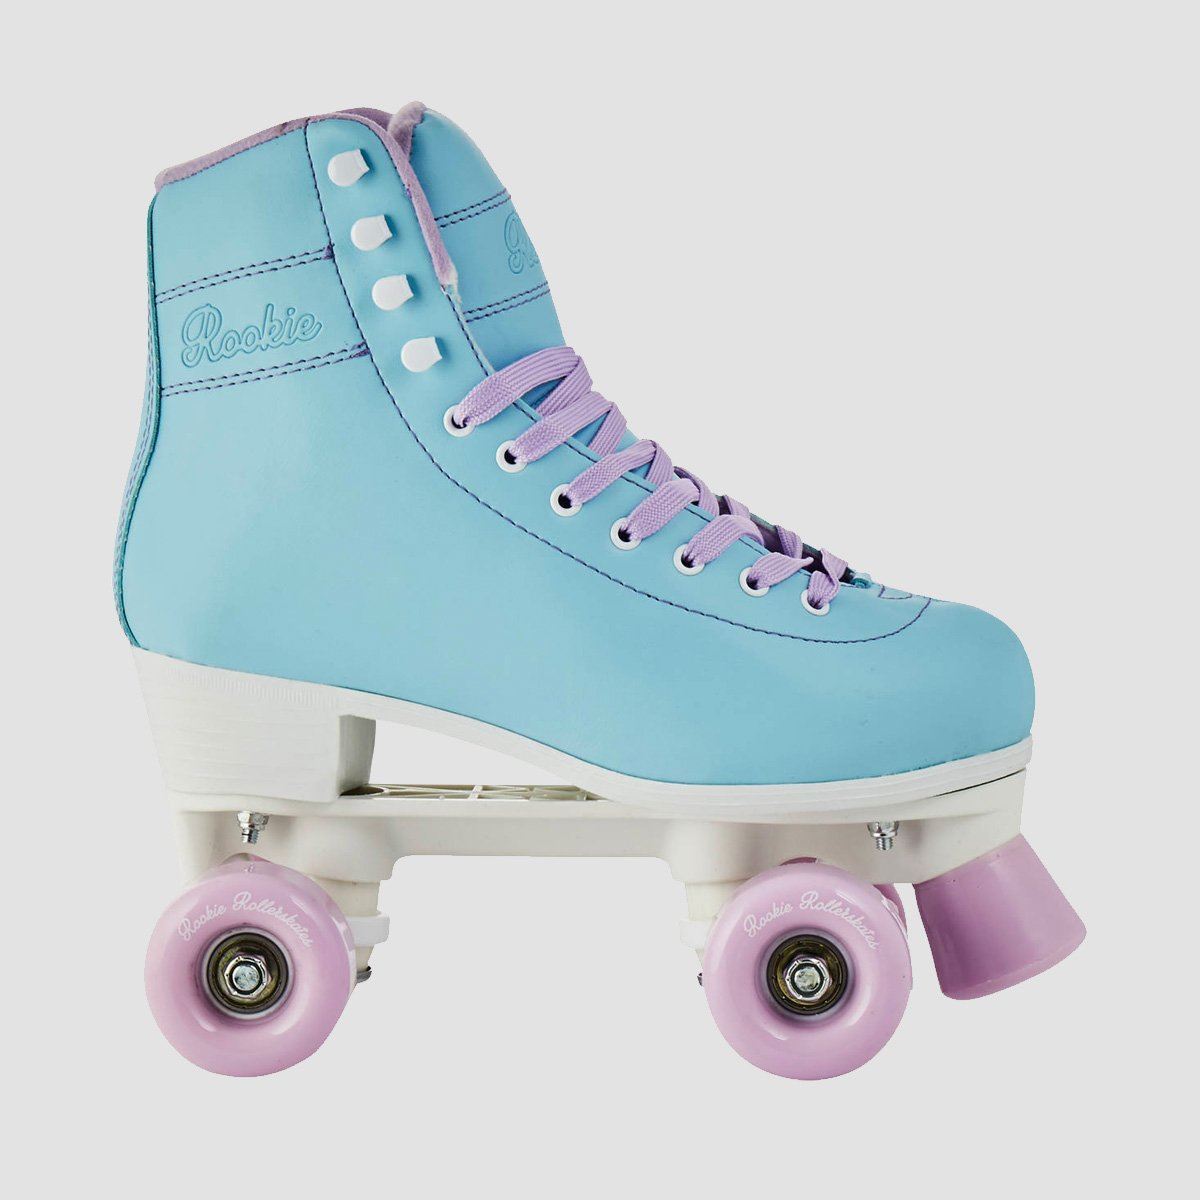 Rookie Bubblegum Quad Skates Blue